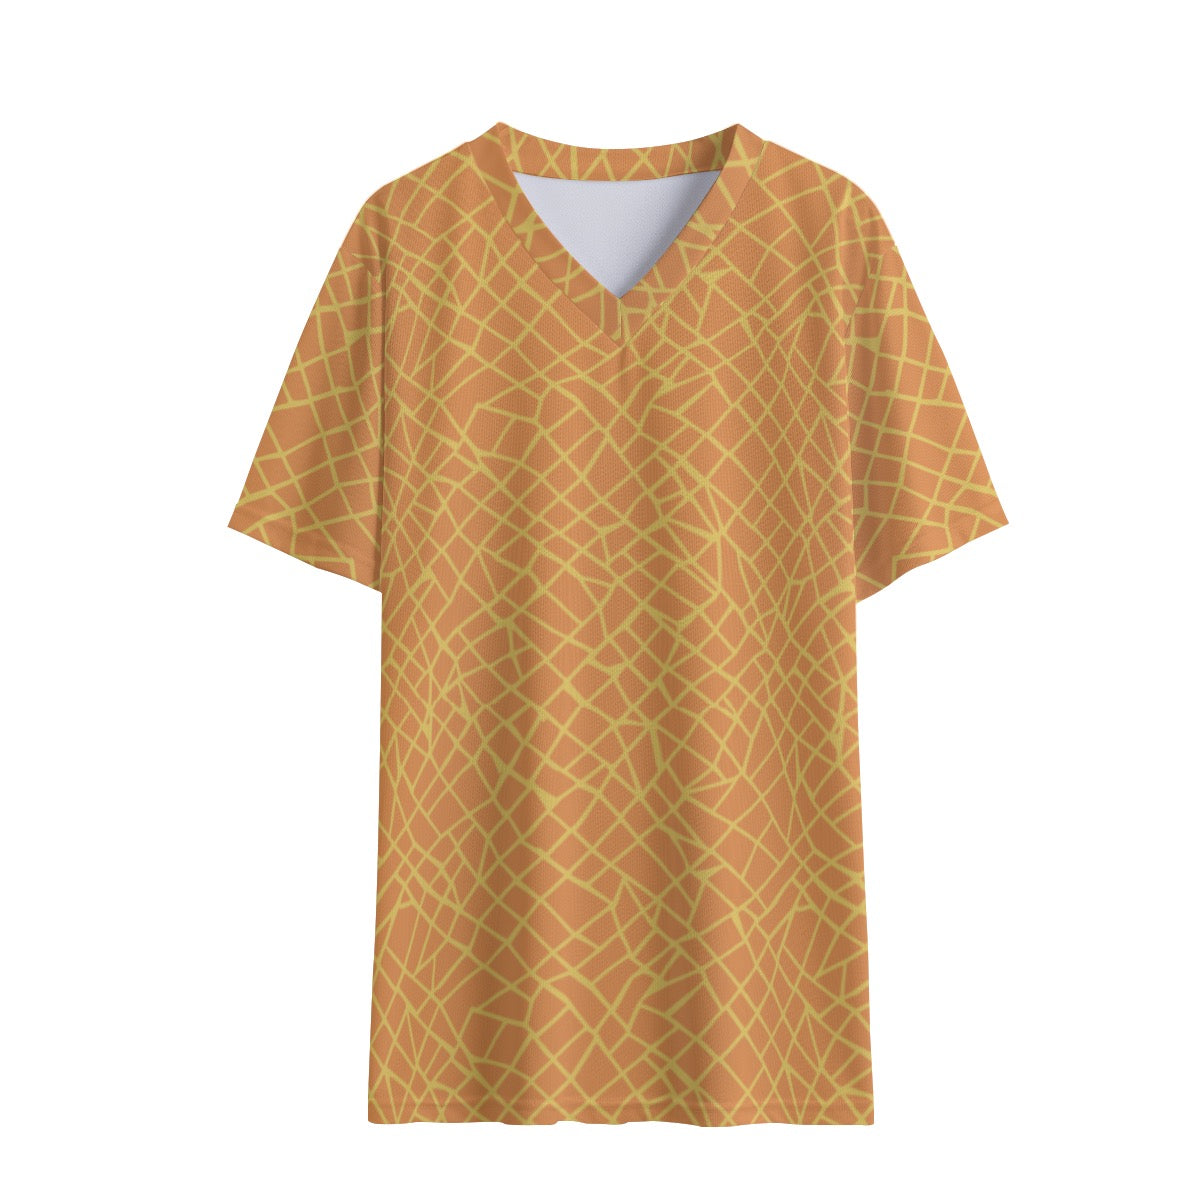 Bayview Tea -- Women's V-neck T-shirt